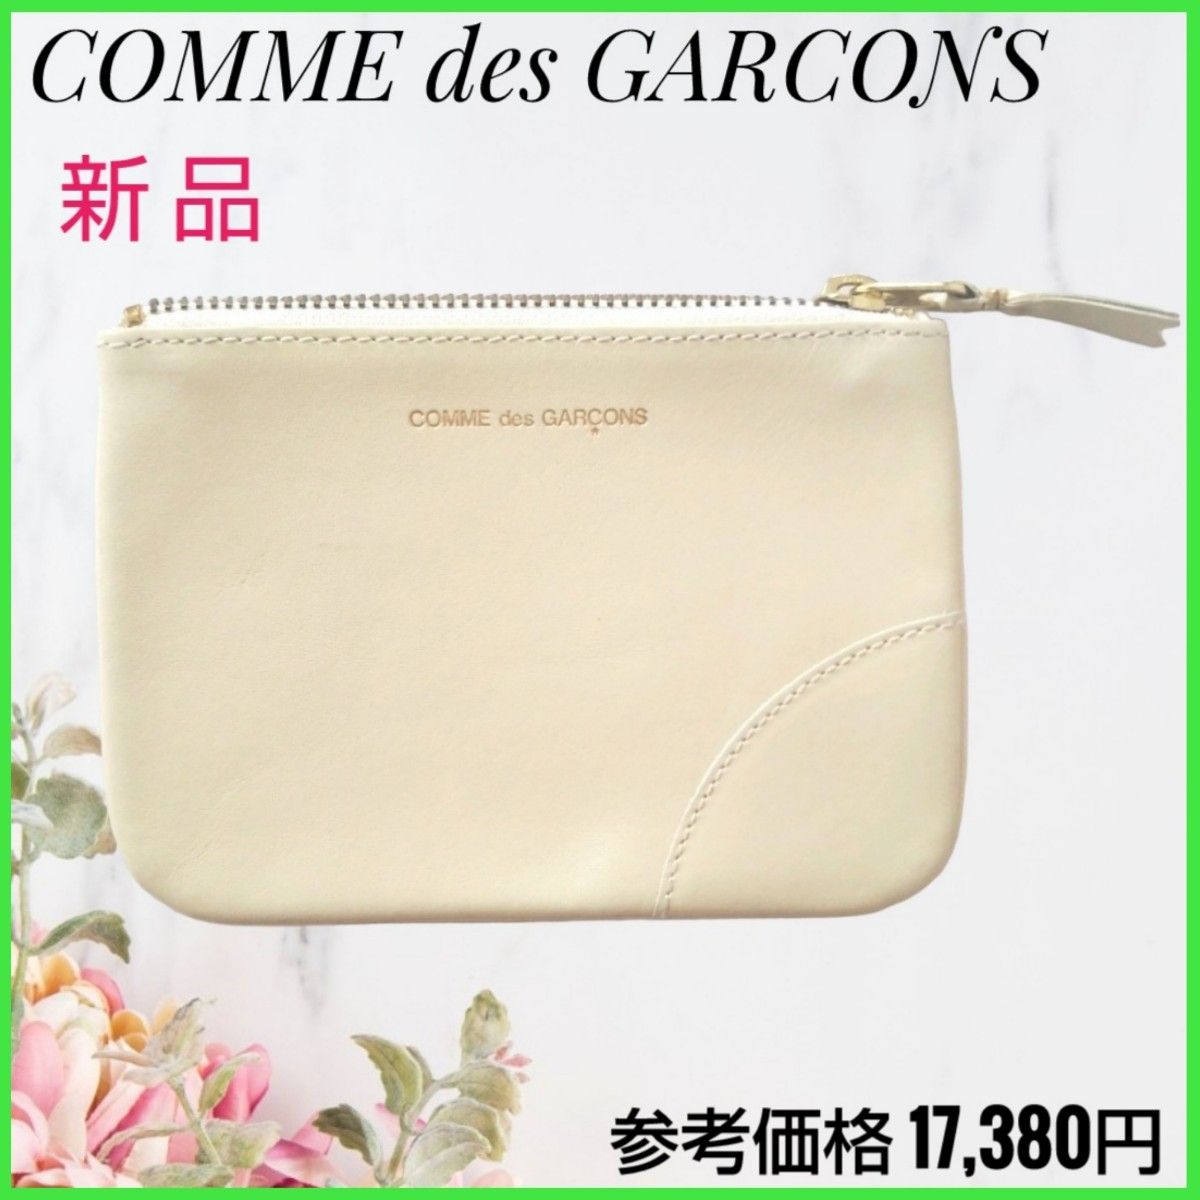 【新品】コムデギャルソン COMME des GARCONS コインケース 小銭入れ 財布 ポーチにも☆ベージュ 白 スペイン製